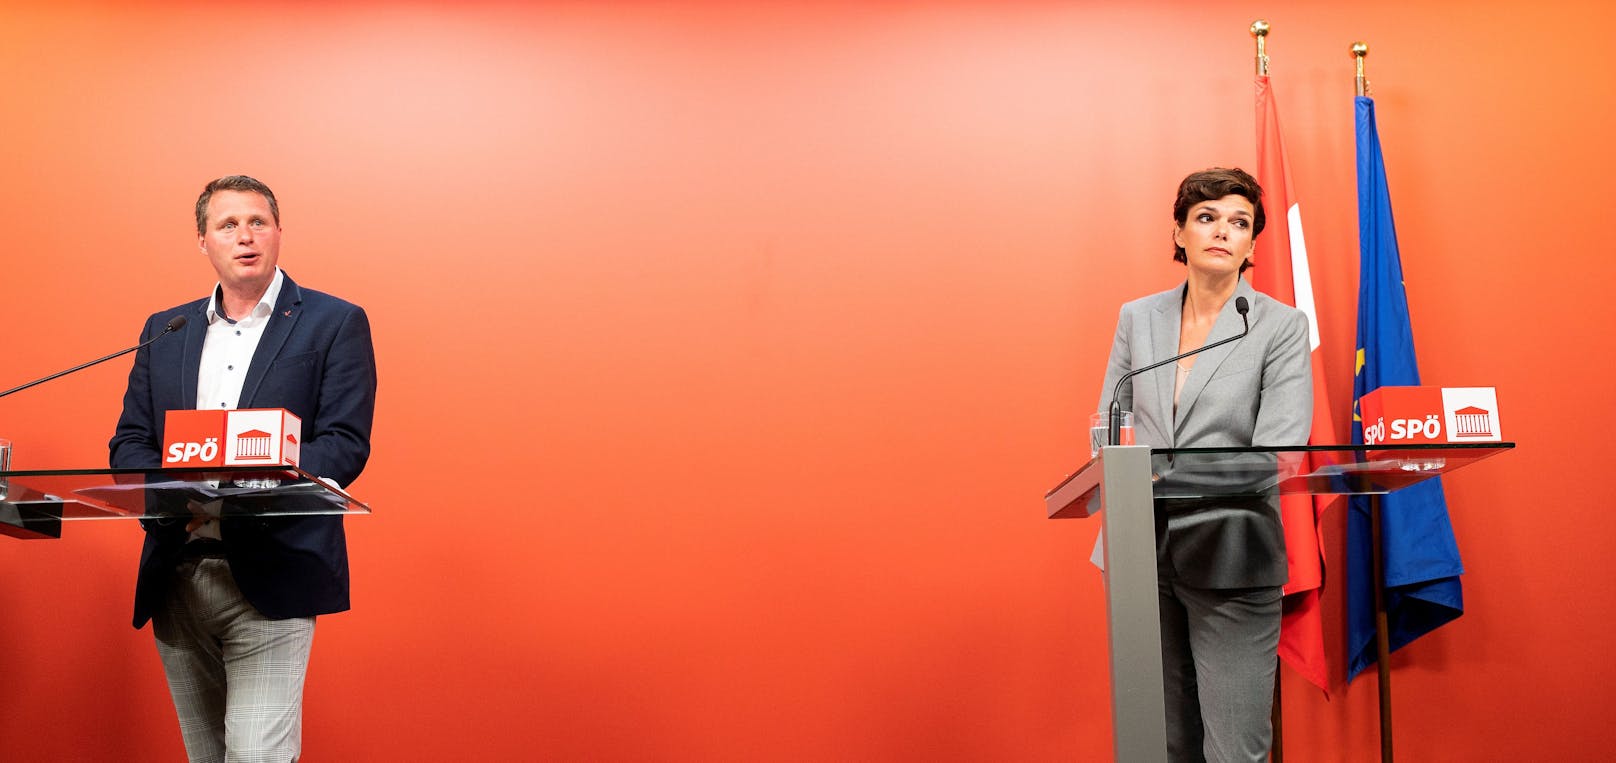 Vida-Vertreter Gerald Mjka im Rahmen einer gemeinsamen Pressekonferenz mit der SPÖ-Vorsitzenden Pamela Rendi-Wagner. Archivbild vom 5. August 2020.